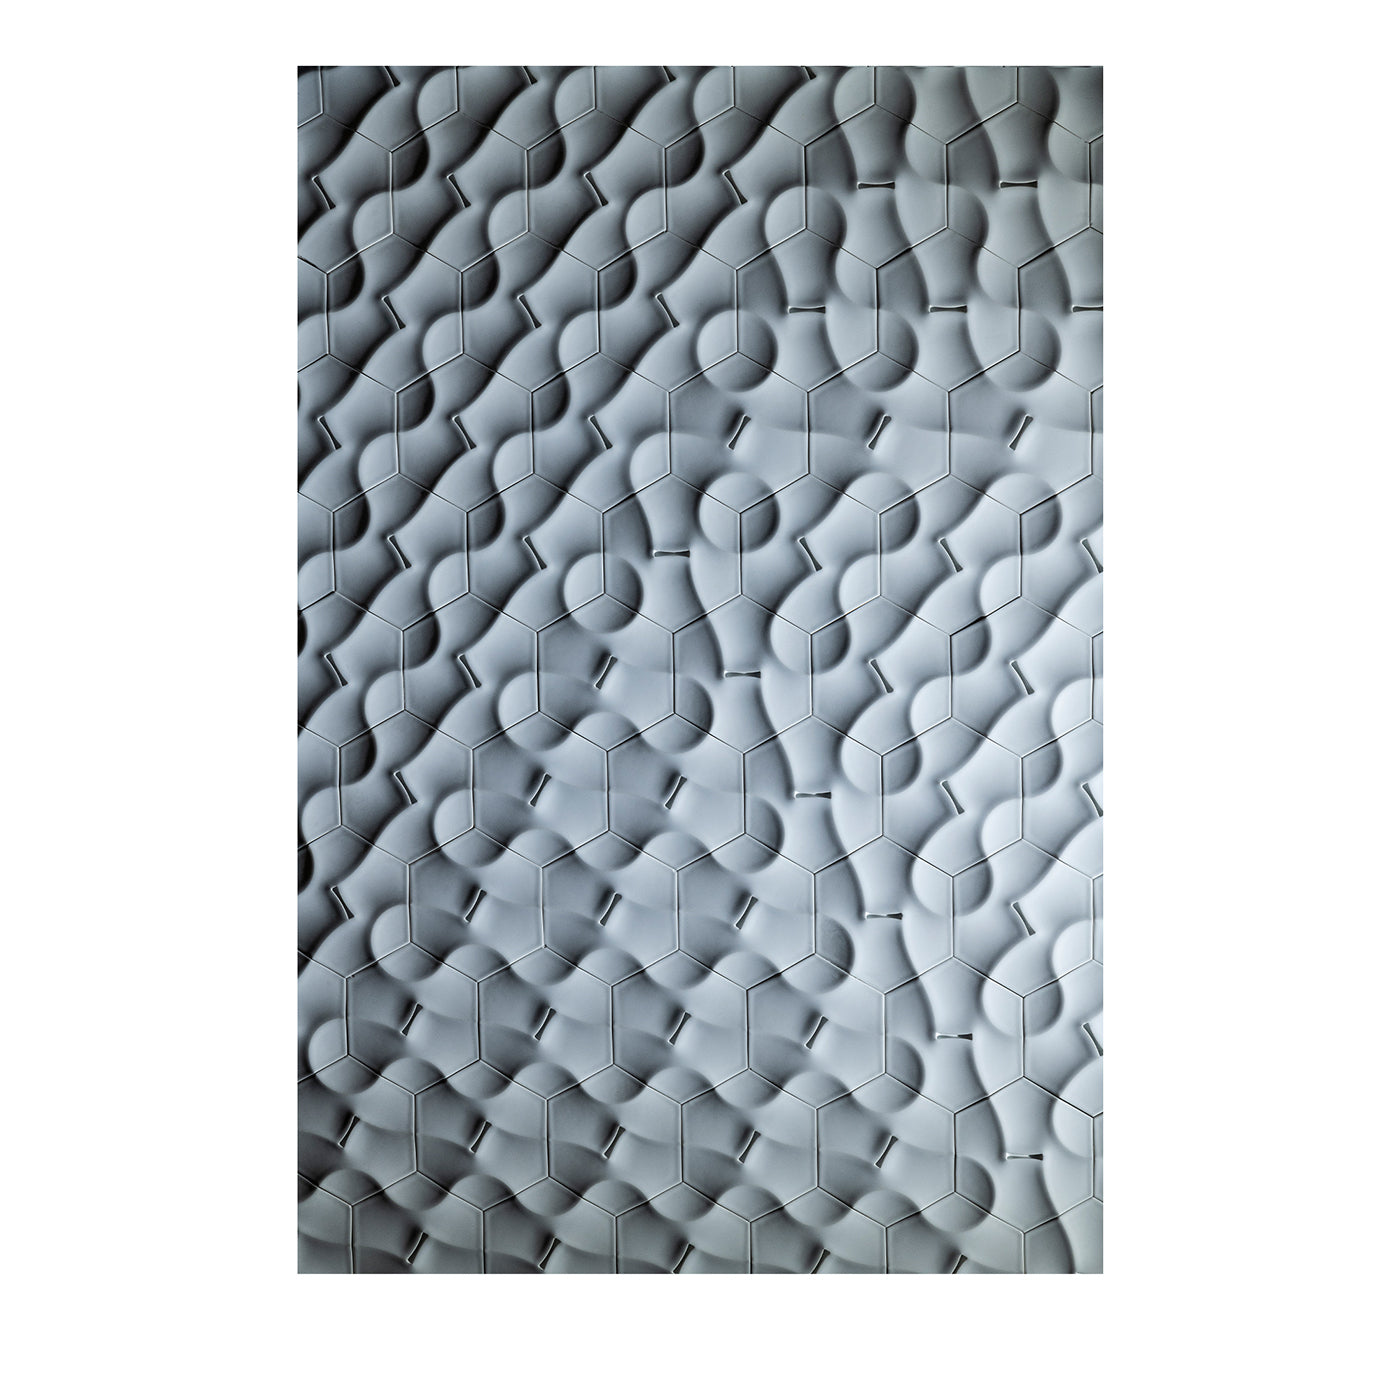 CADENZA Tiles by Kejun Li #3 - Vue principale